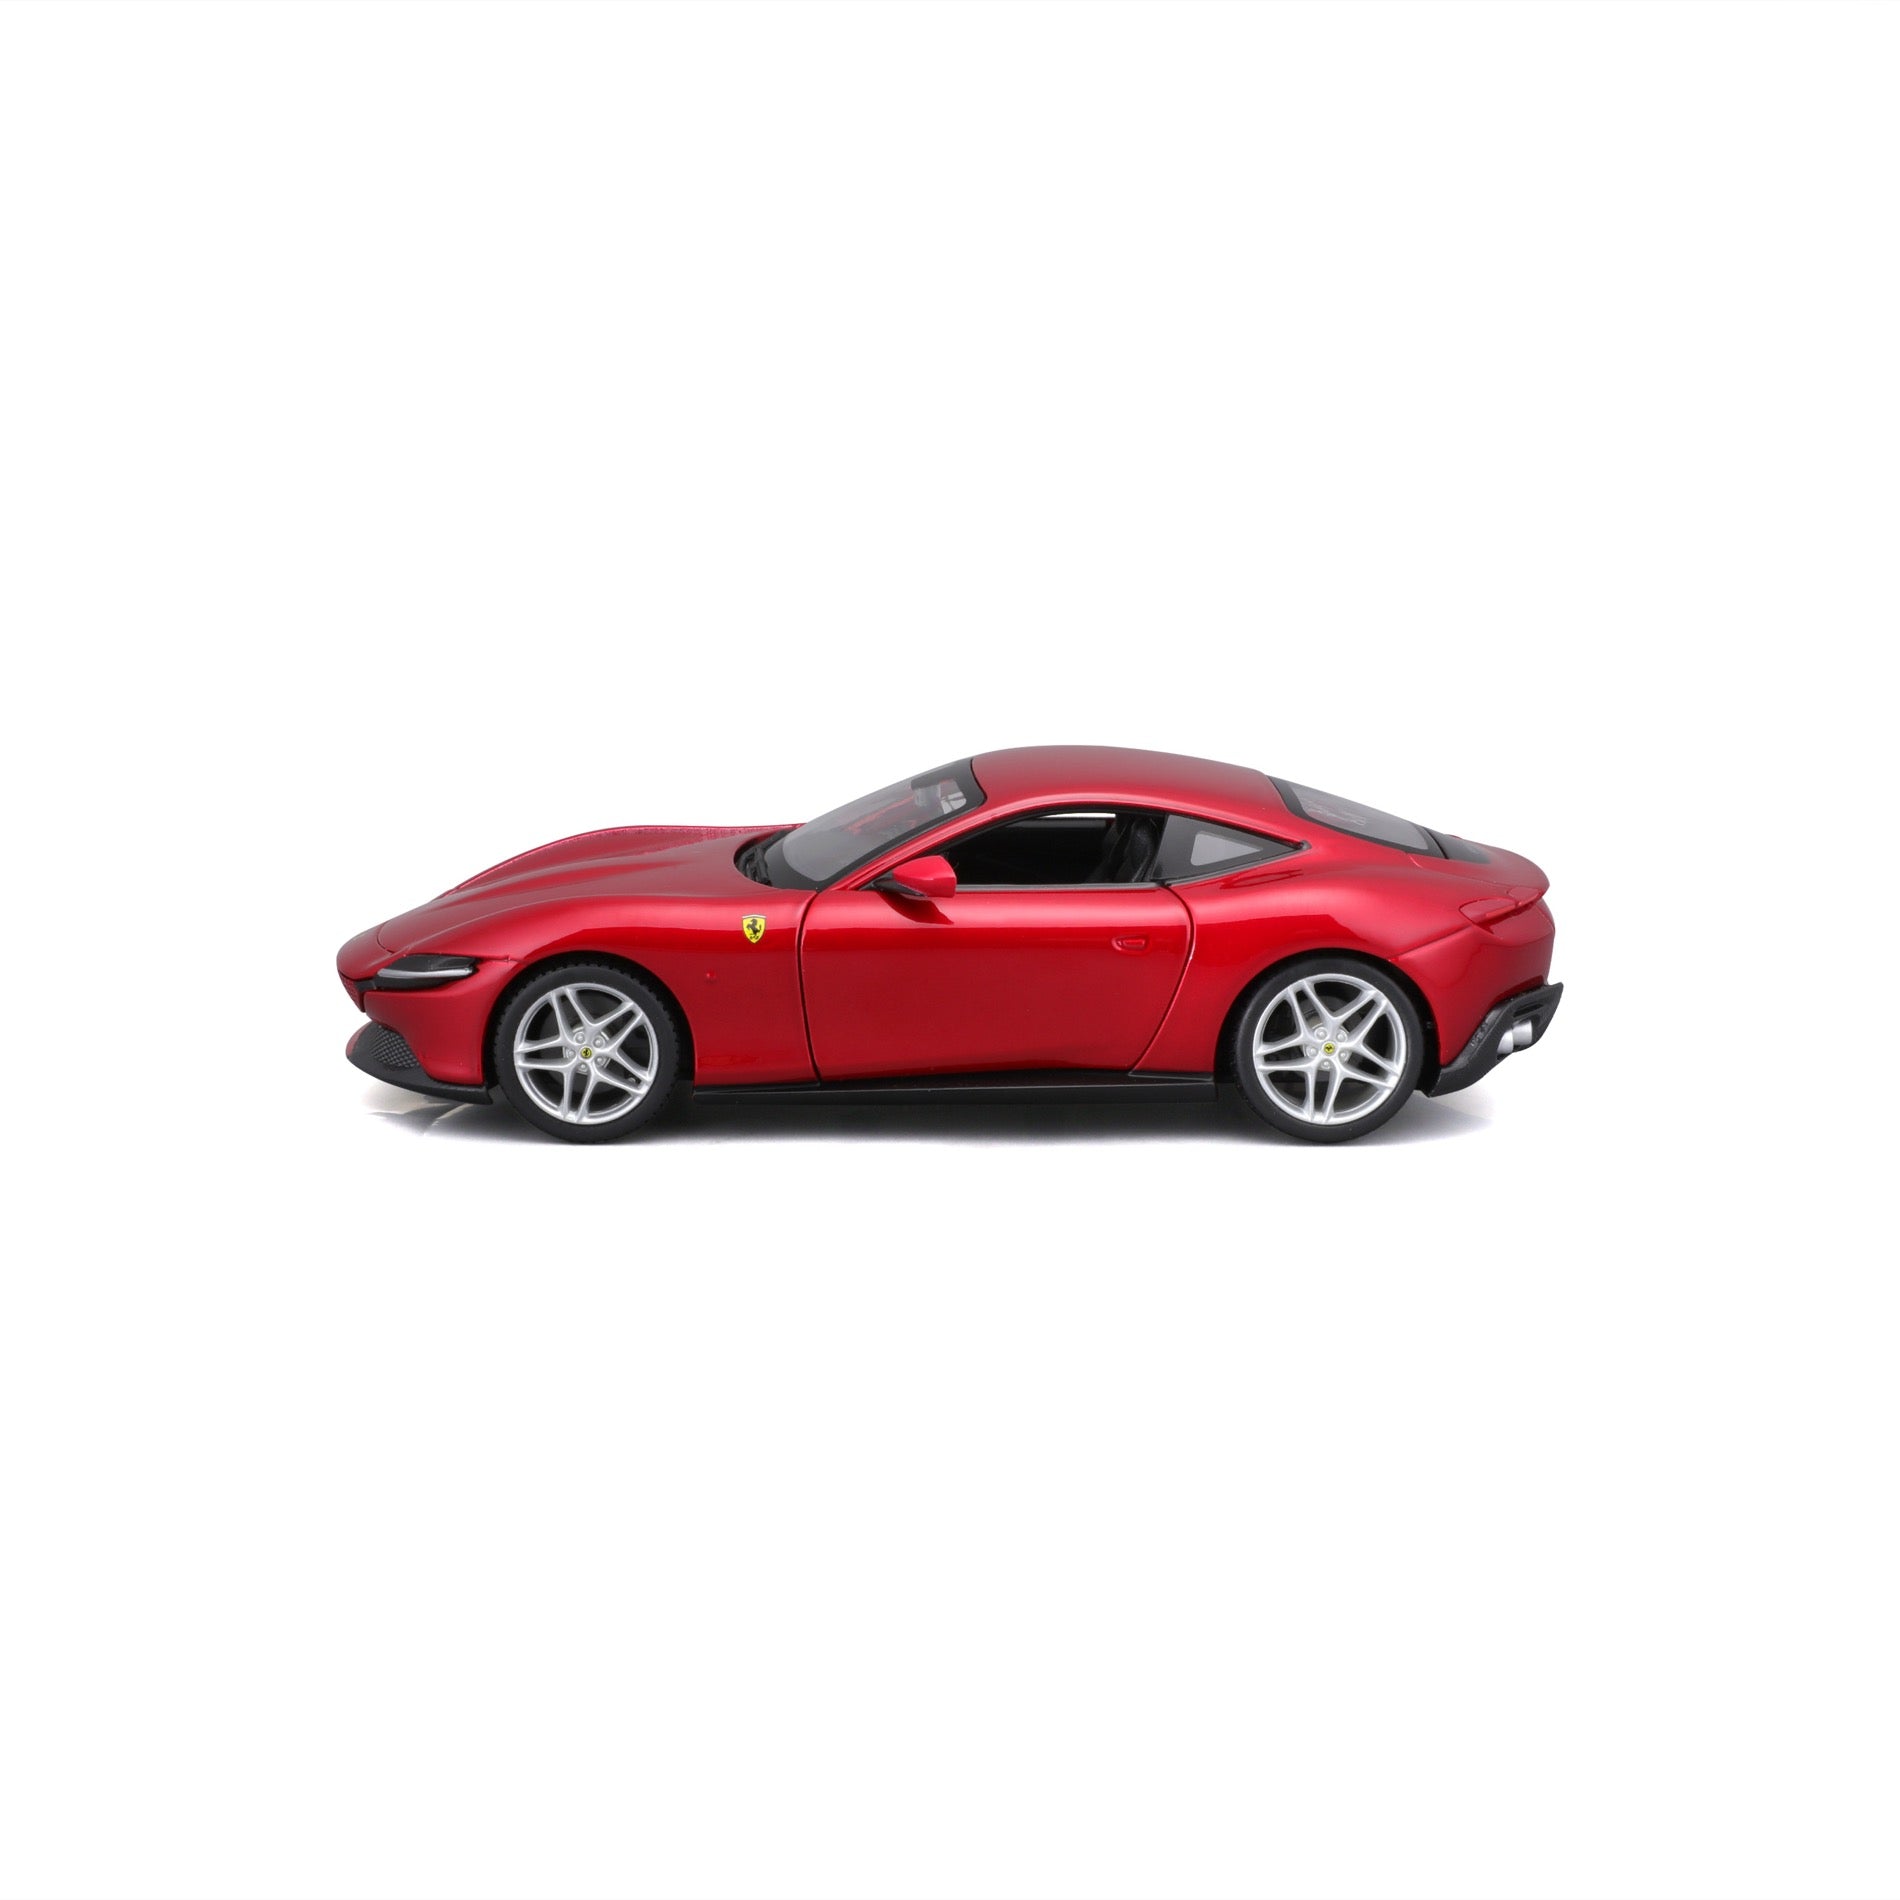 Ferrari F40 rouge serie Premium 1/18 Bburago bur16601